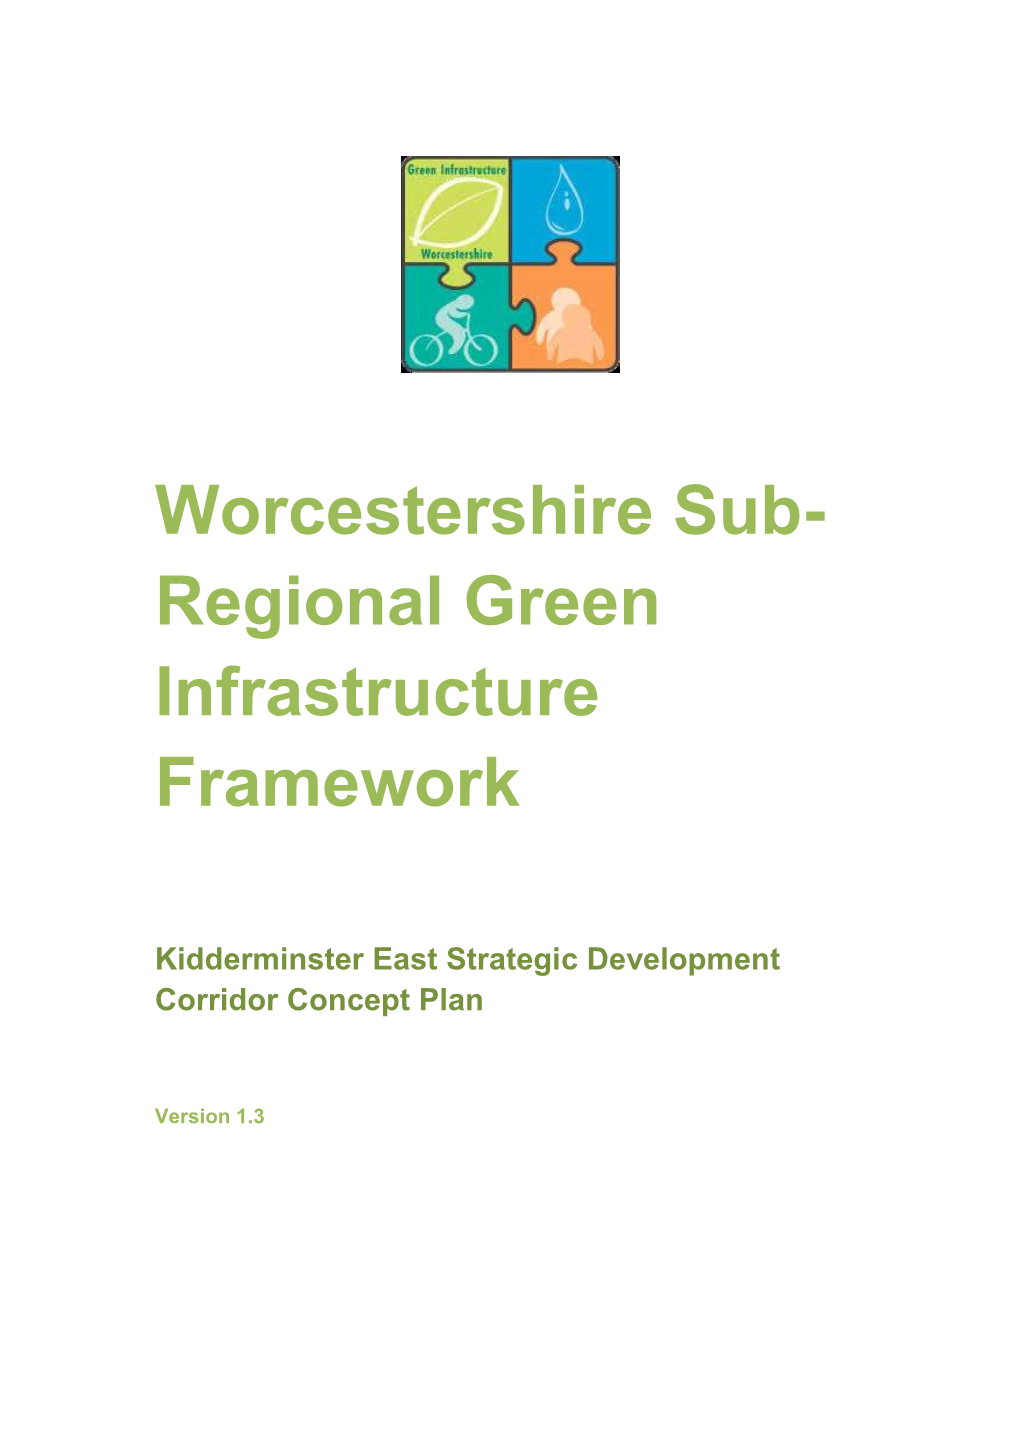 Kidderminster East Strategic Development Corridor Concept Plan